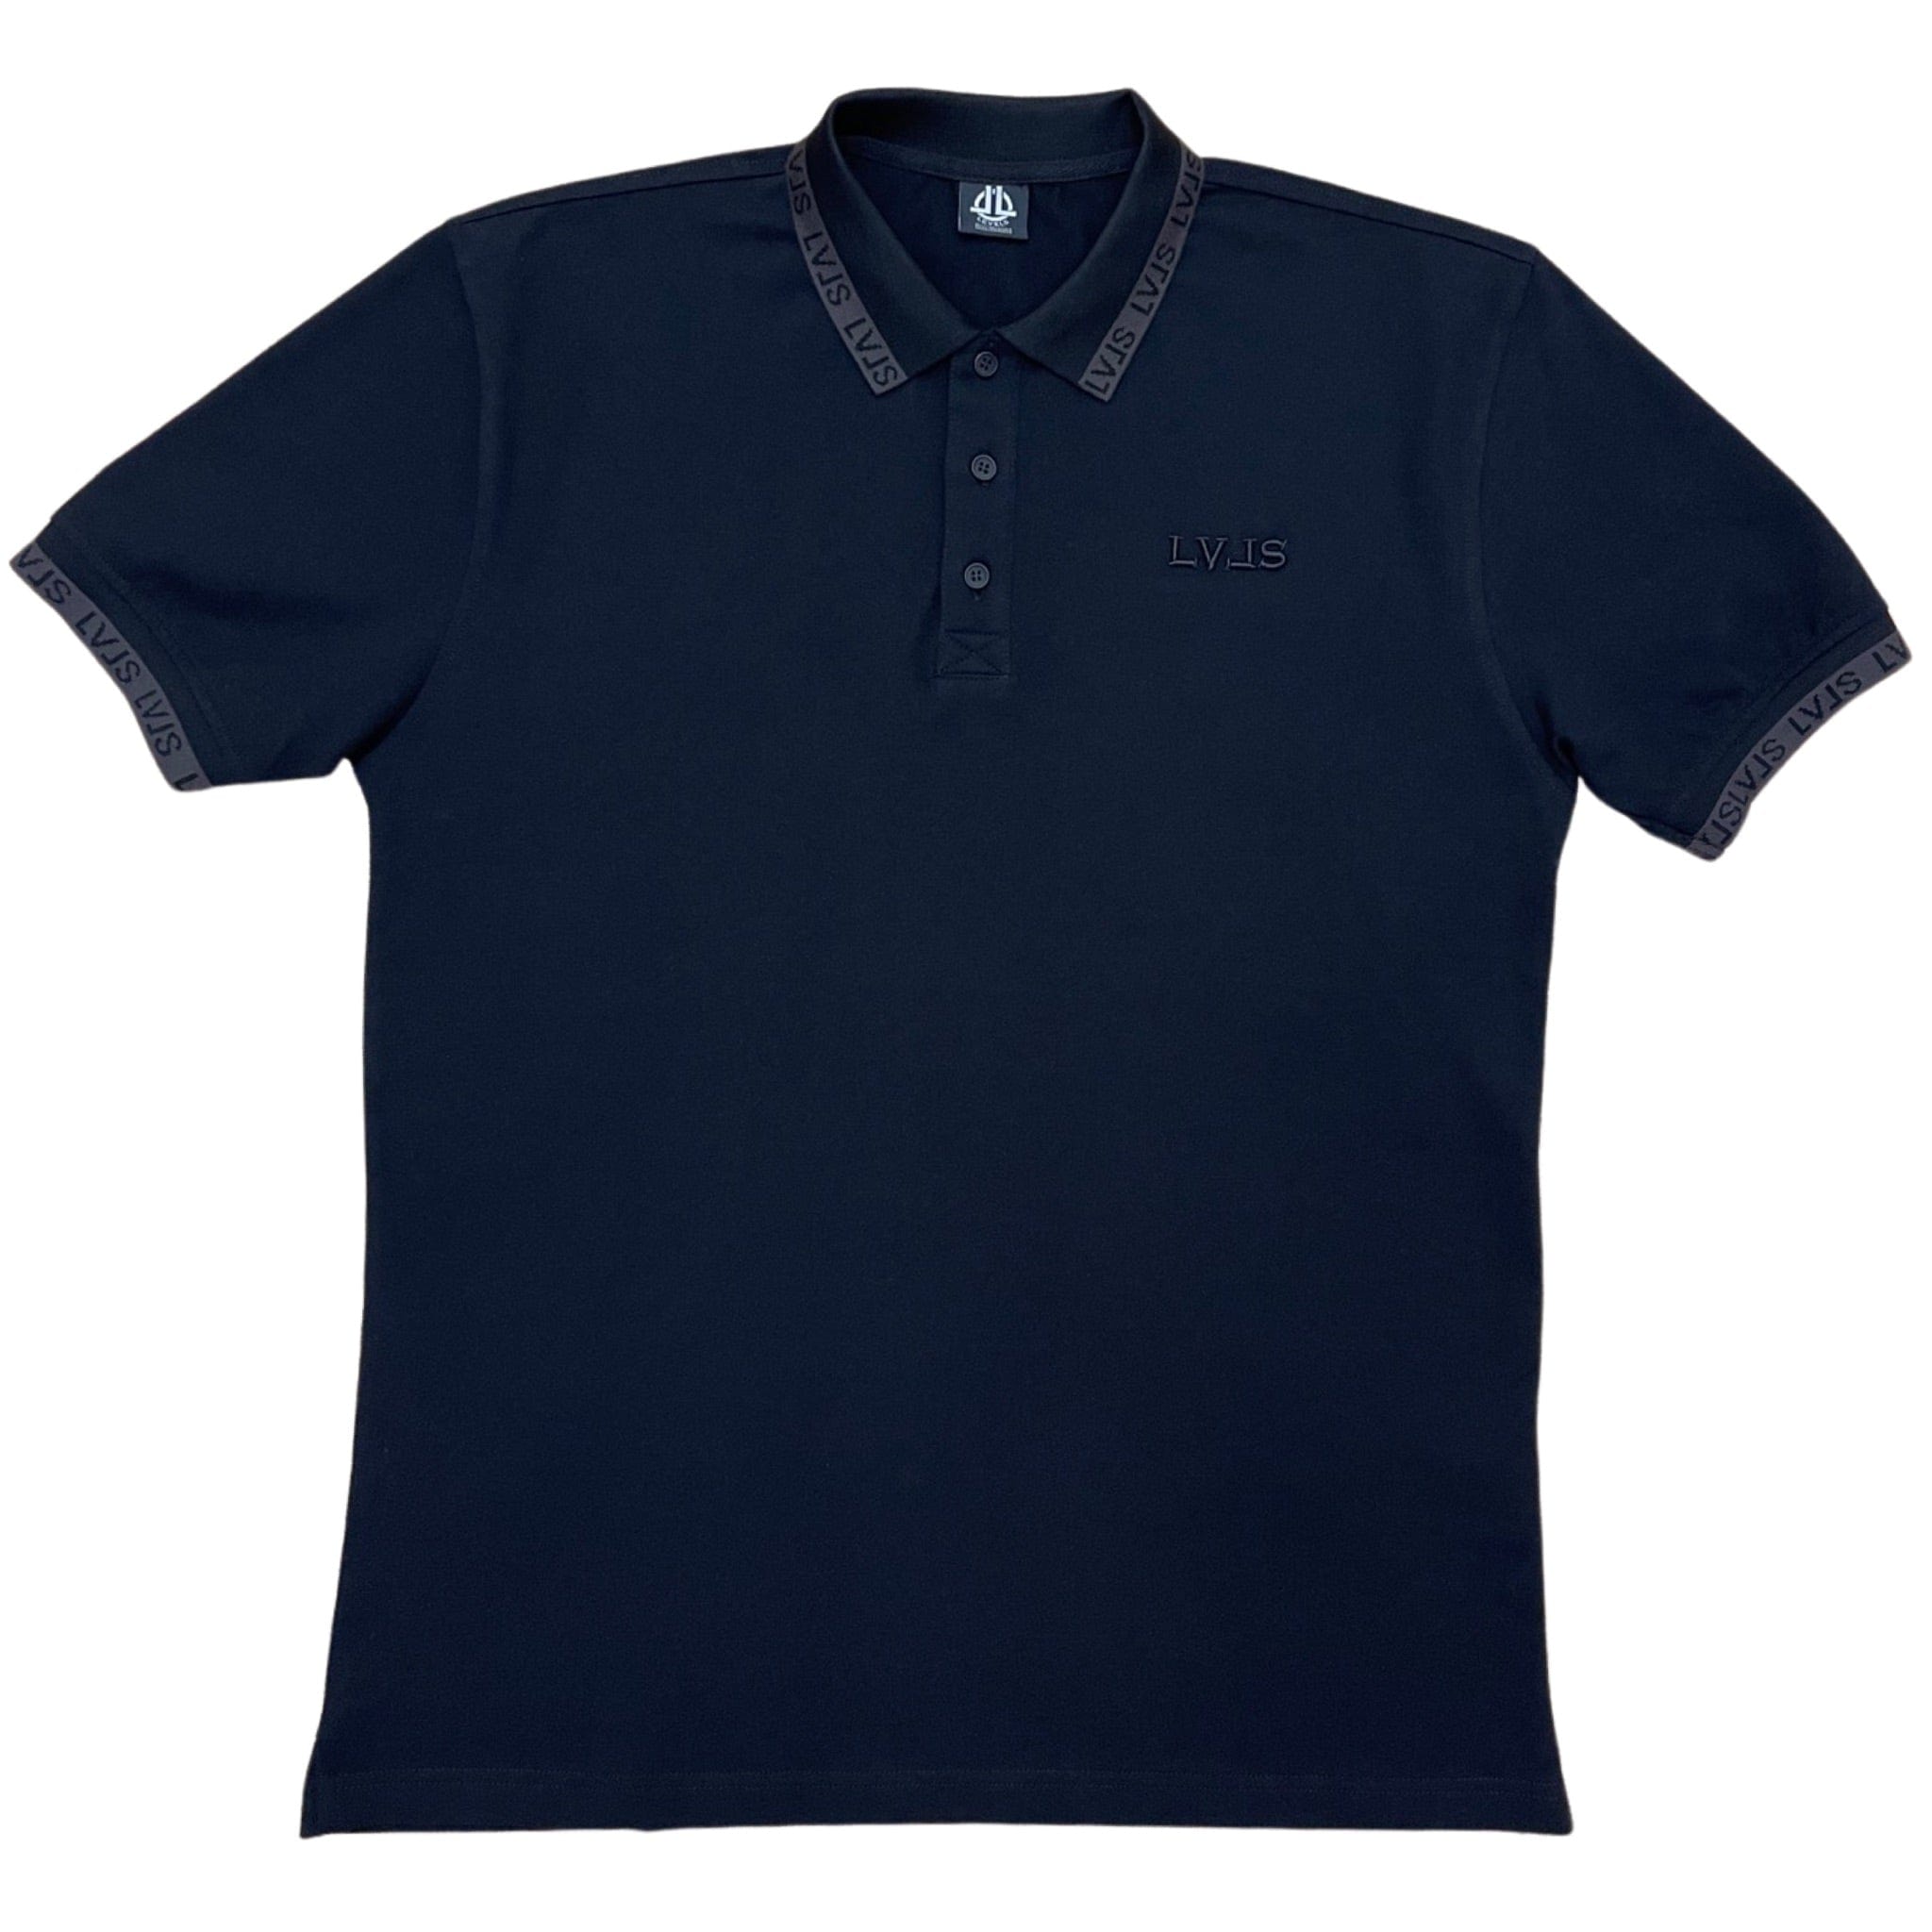 LEVELS, LLC Shirts & Tops LVLS Polo (Black w/ Charcoal Logo)